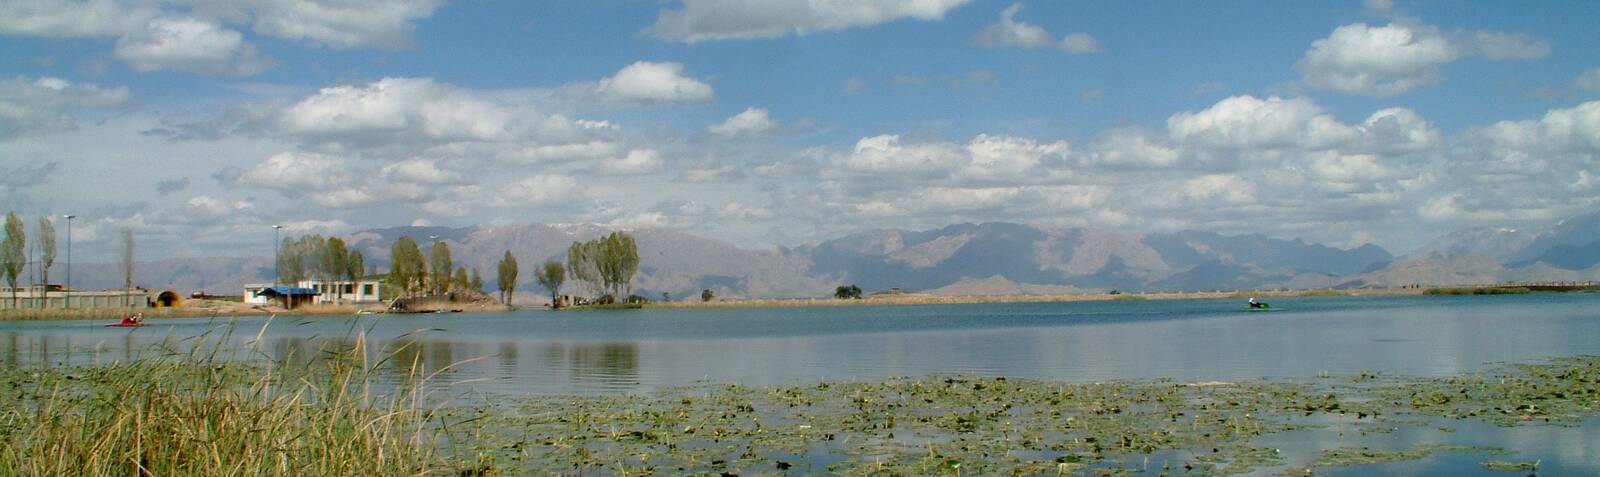 Lago Nilufar (Sarab-e Nilufar)